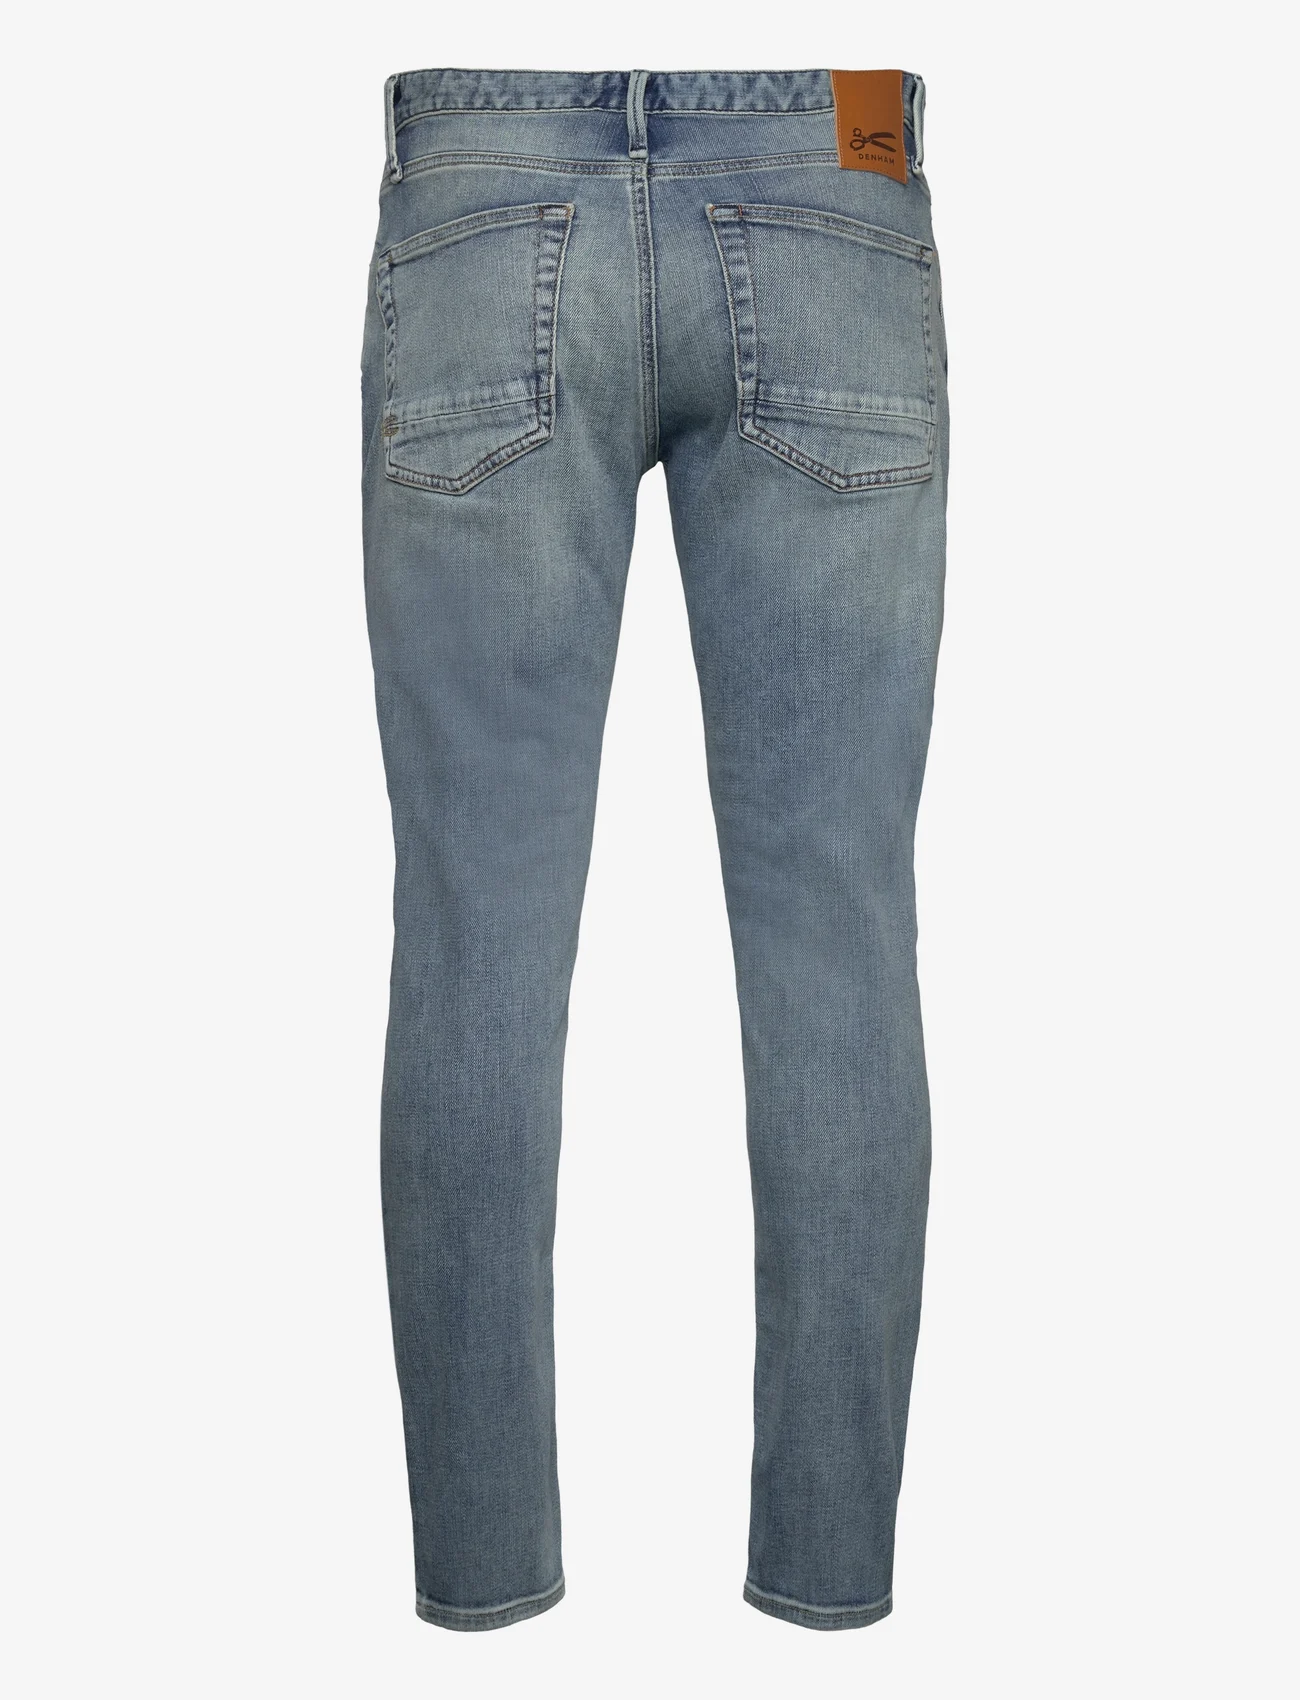 Denham - RAZOR - slim jeans - light blue - 1